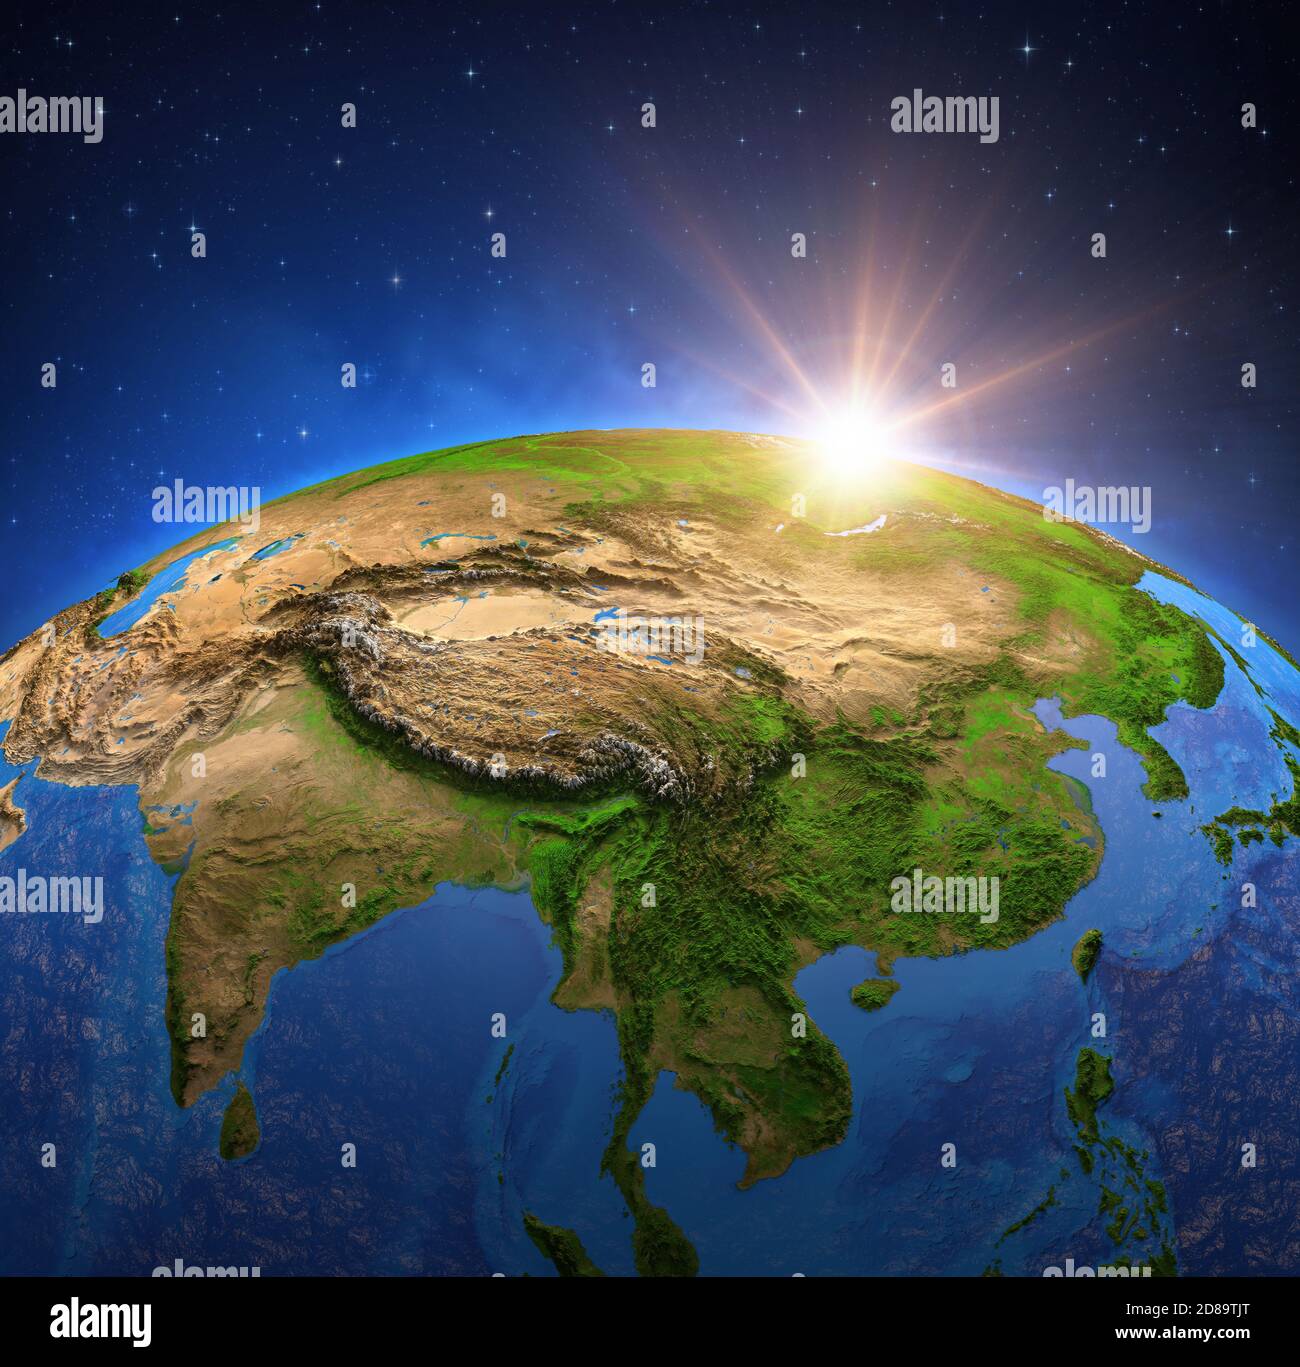 Surface de la planète Terre vue à partir d'un satellite, focalisé sur l'Asie de l'est, le soleil se levant à l'horizon. Carte physique de la Chine. Éléments de la NASA. Banque D'Images